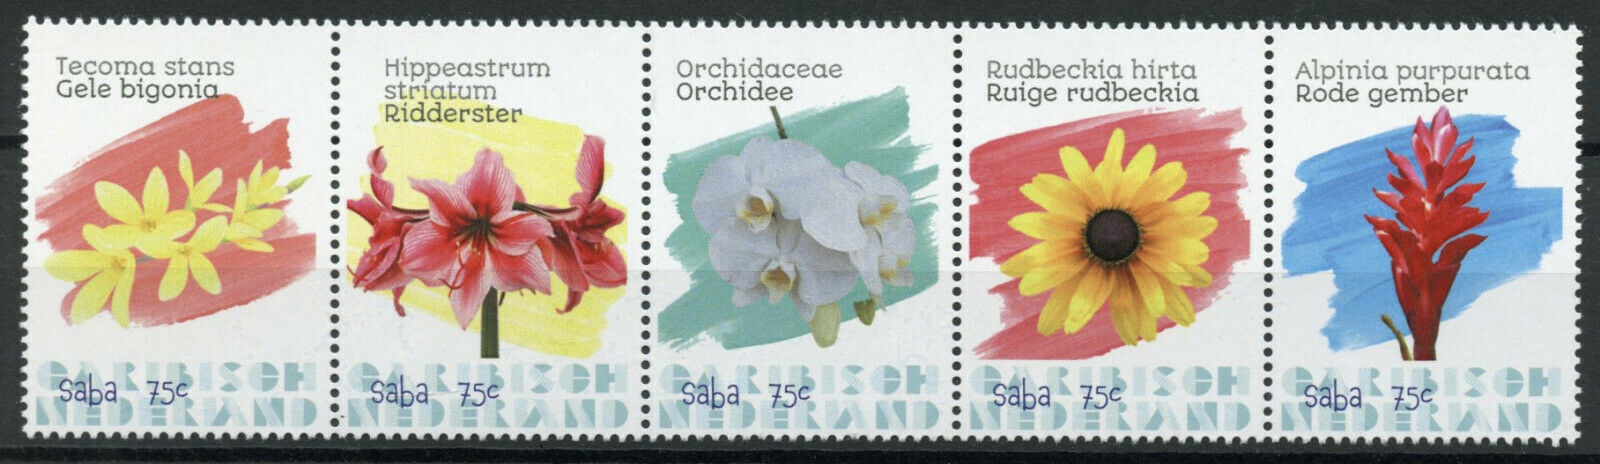 Saba Caribbean Netherlands Flowers Stamps 2020 MNH Orchids Flora Nature 5v Strip